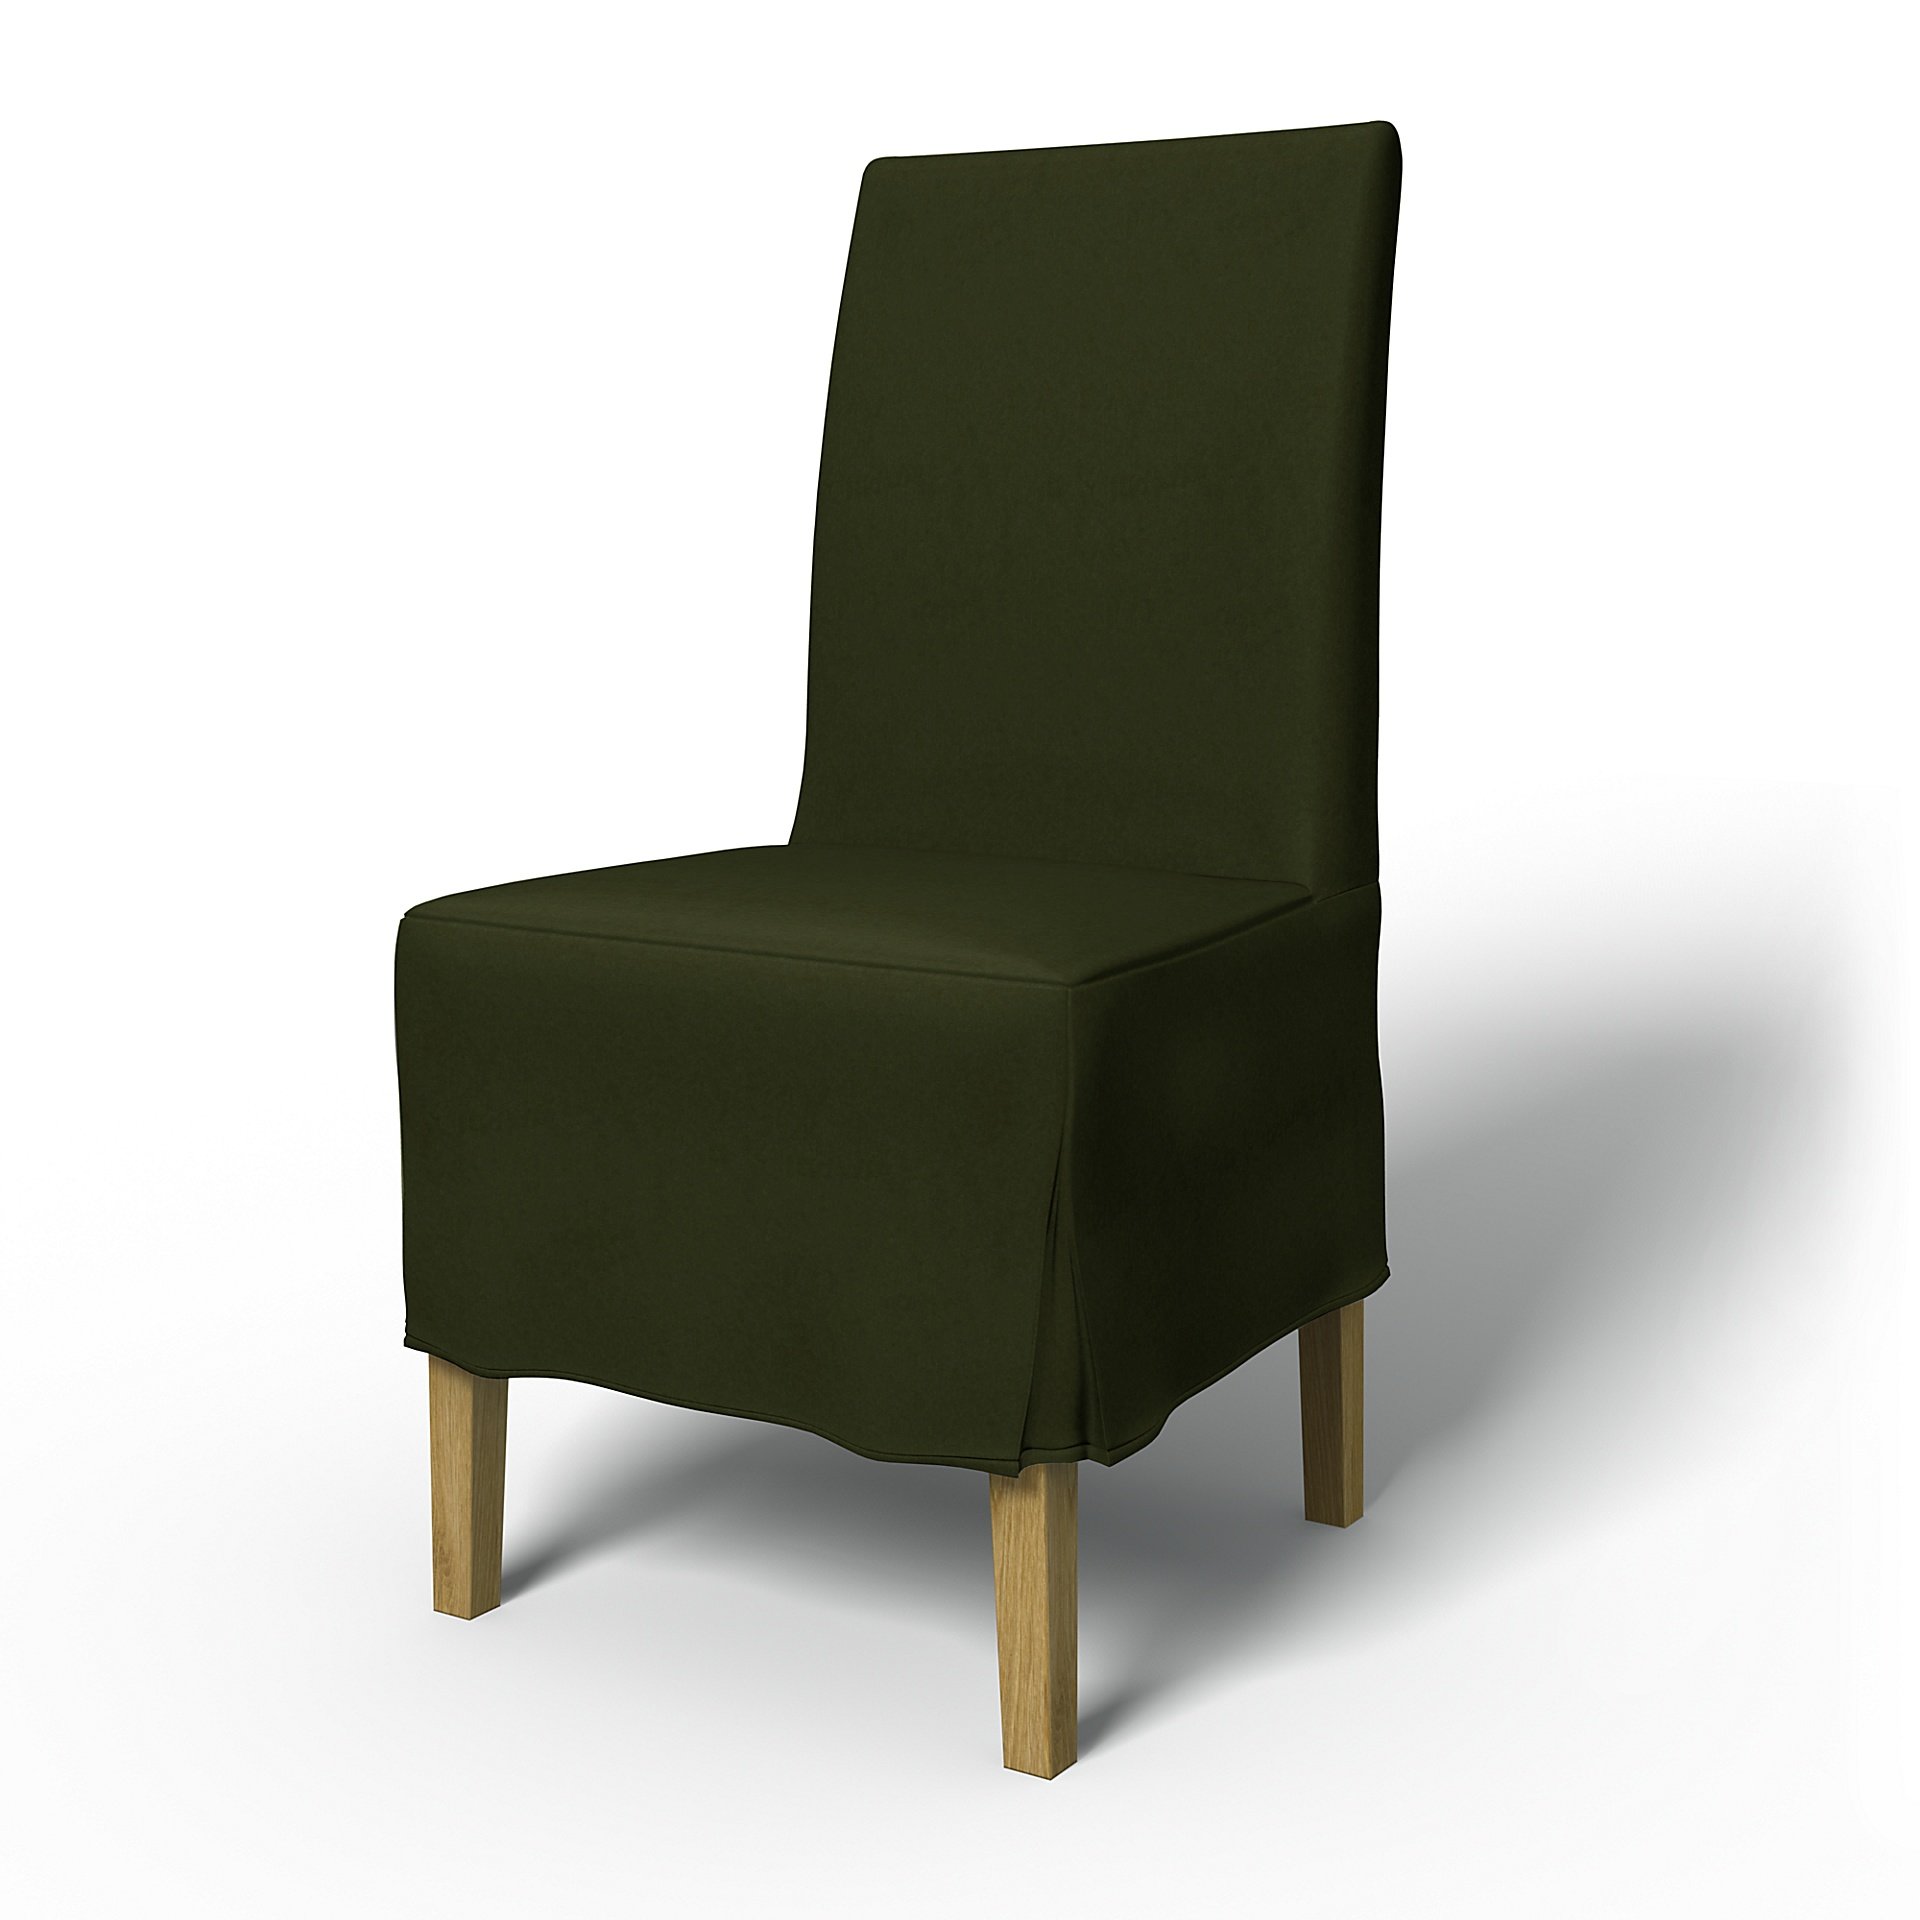 IKEA - Henriksdal Dining Chair Cover Medium skirt with Box Pleat (Standard model), Moss, Velvet - Be